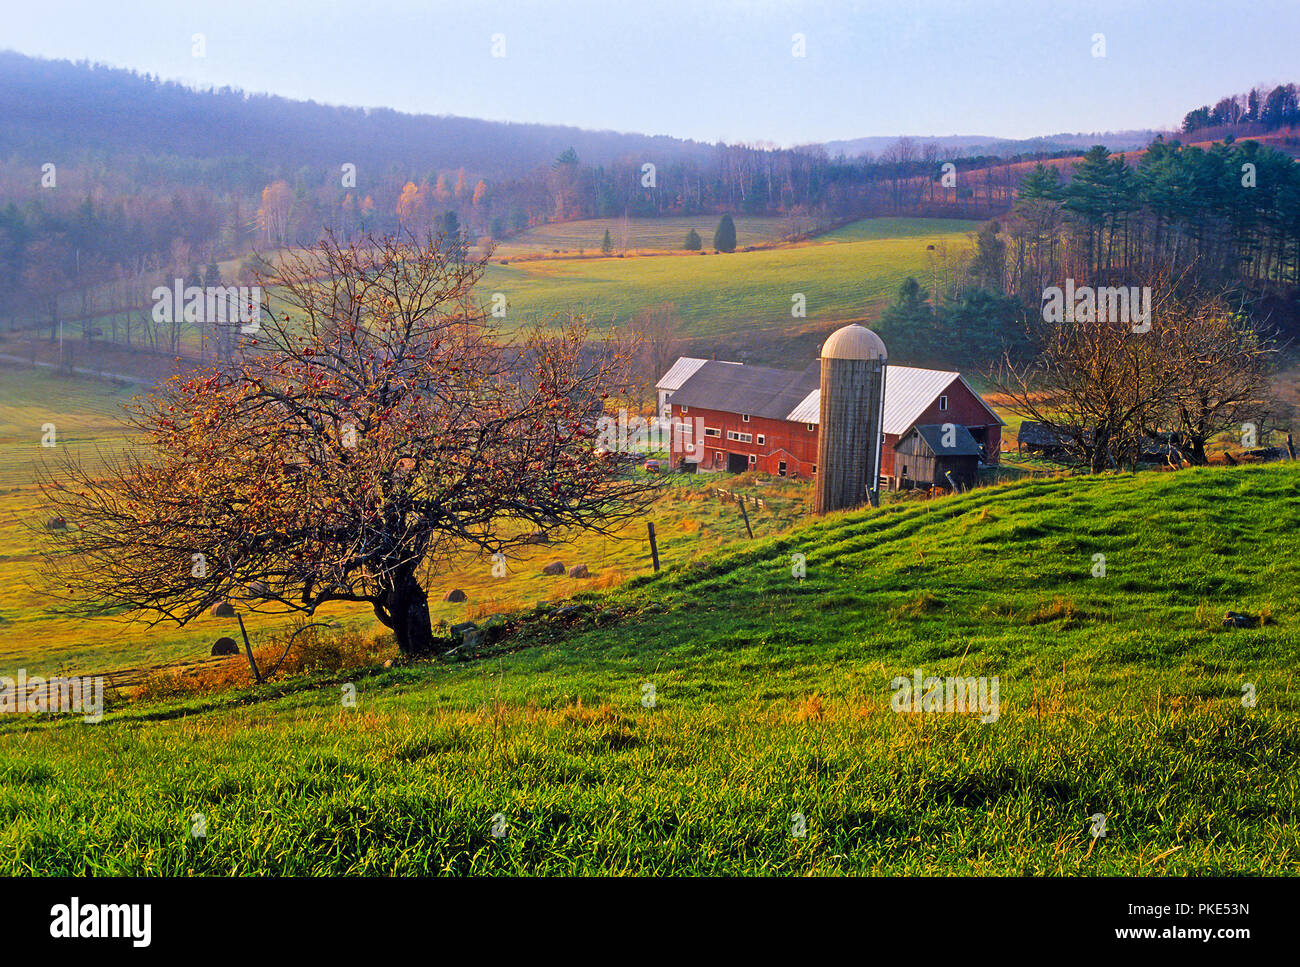 New England landschaftlich-Farm Felder mit einem roten Scheune, Silo- und Apfelbäume am frühen Morgen in ländlichen Vermont, USA. Stockfoto